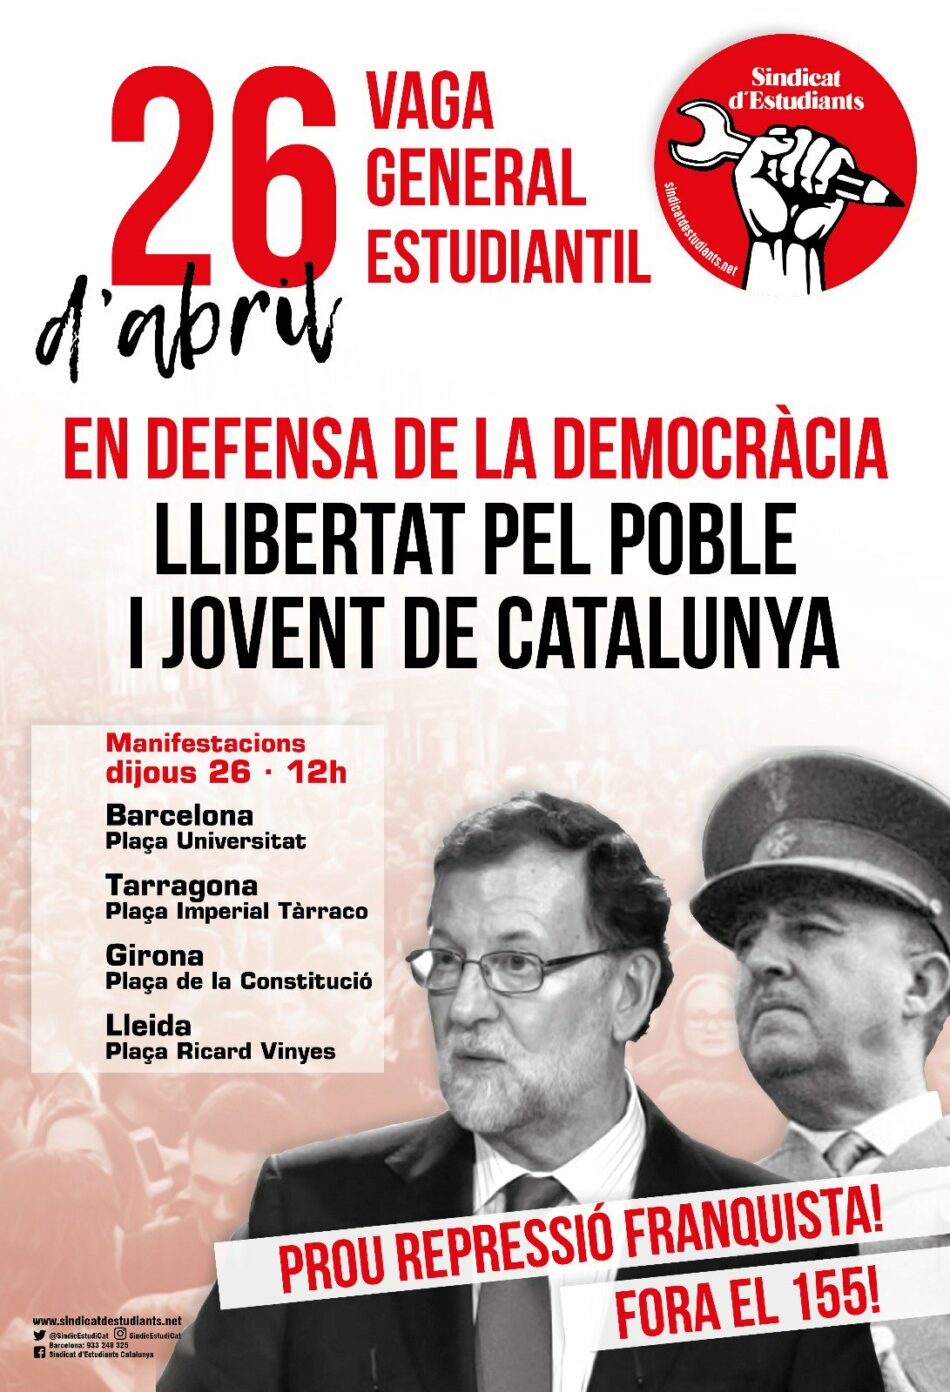 26 d’Abril Vaga General Estudiantil: En defensa de la democrácia! Llibertat pel poble i el jovent de Catalunya!